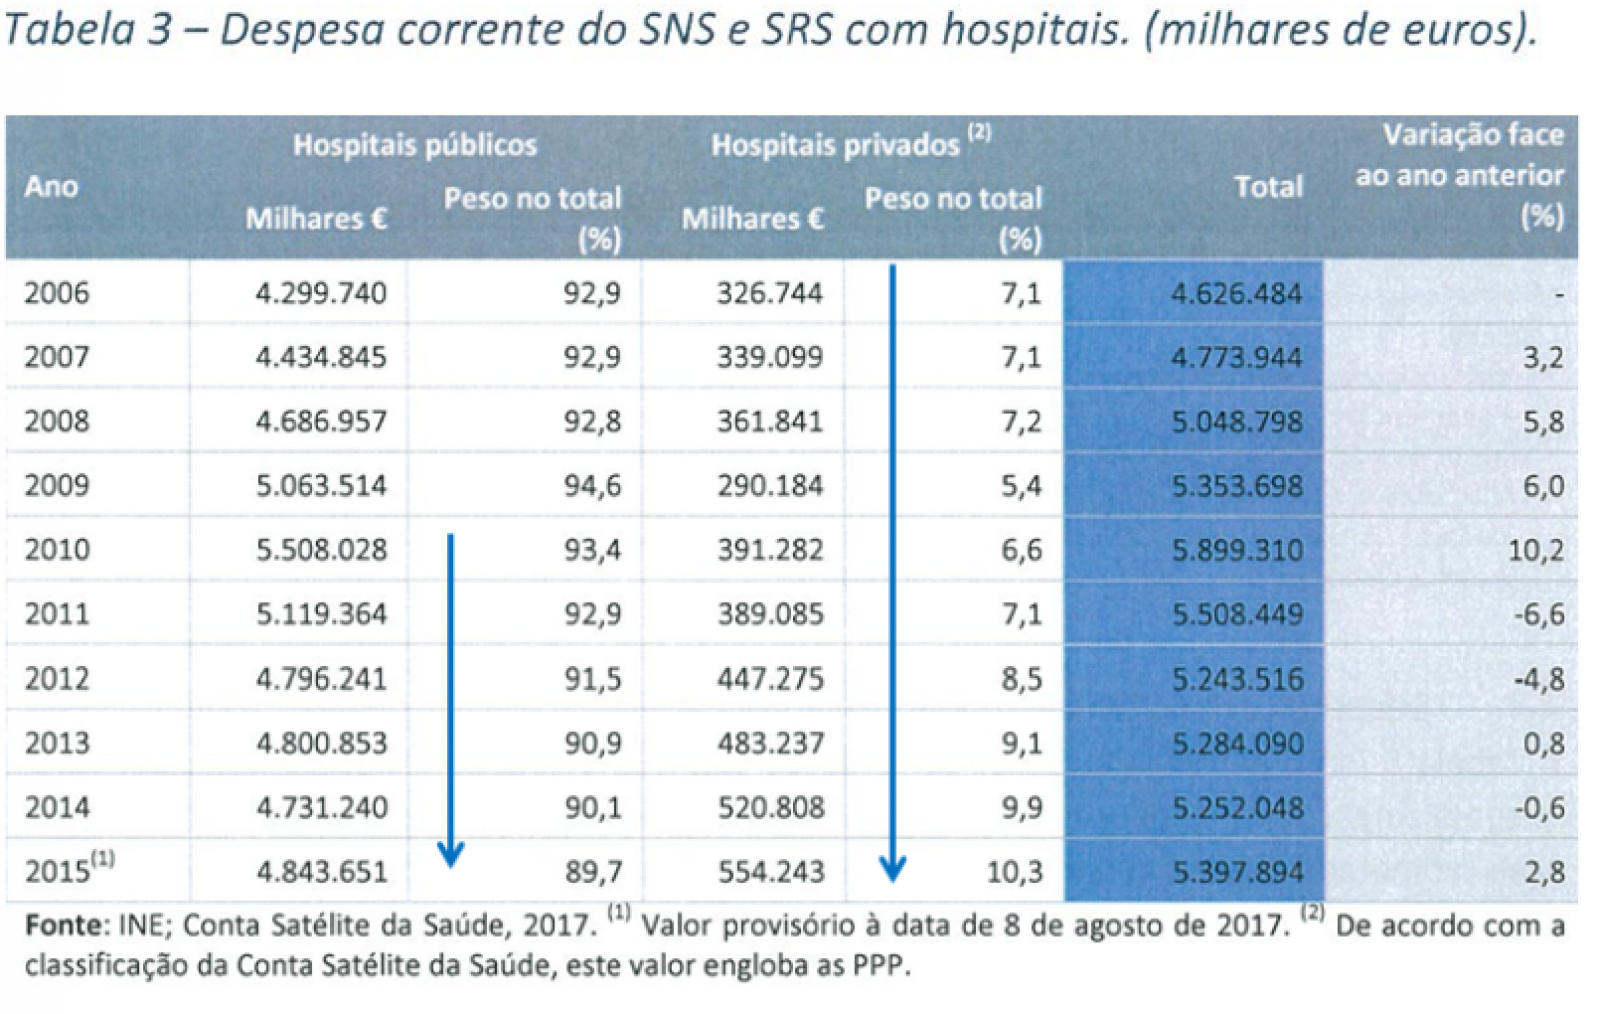 Despesa corrente do SNS e SRS com hospitais